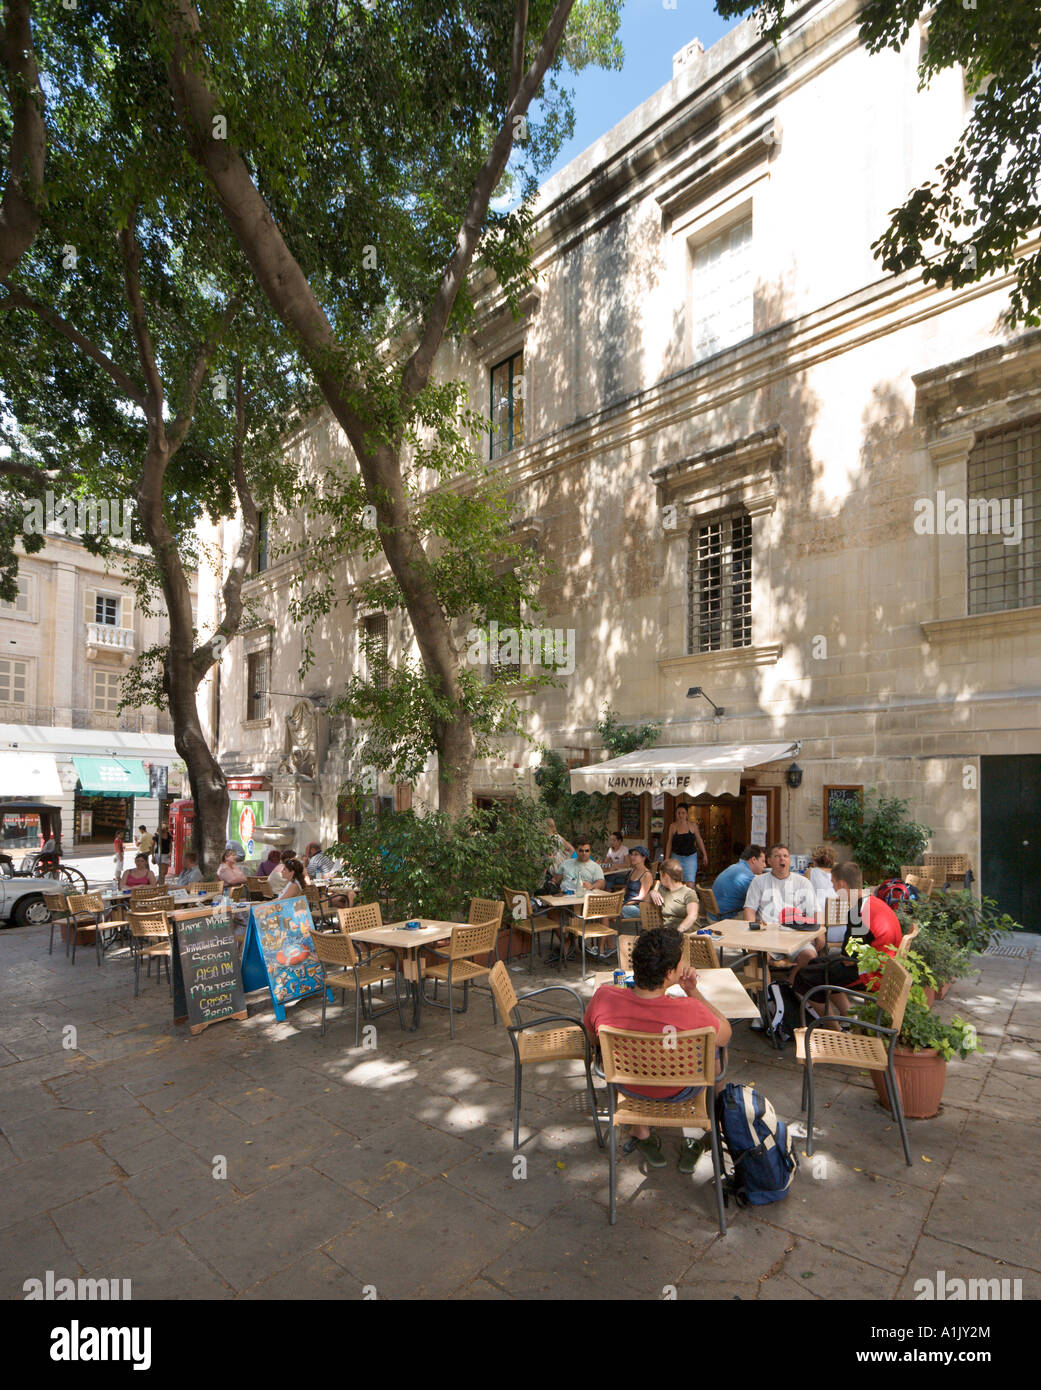 Sidewalk Cafe off Republic Street or Triq Repubblika (the main street), Valletta, Malta Stock Photo